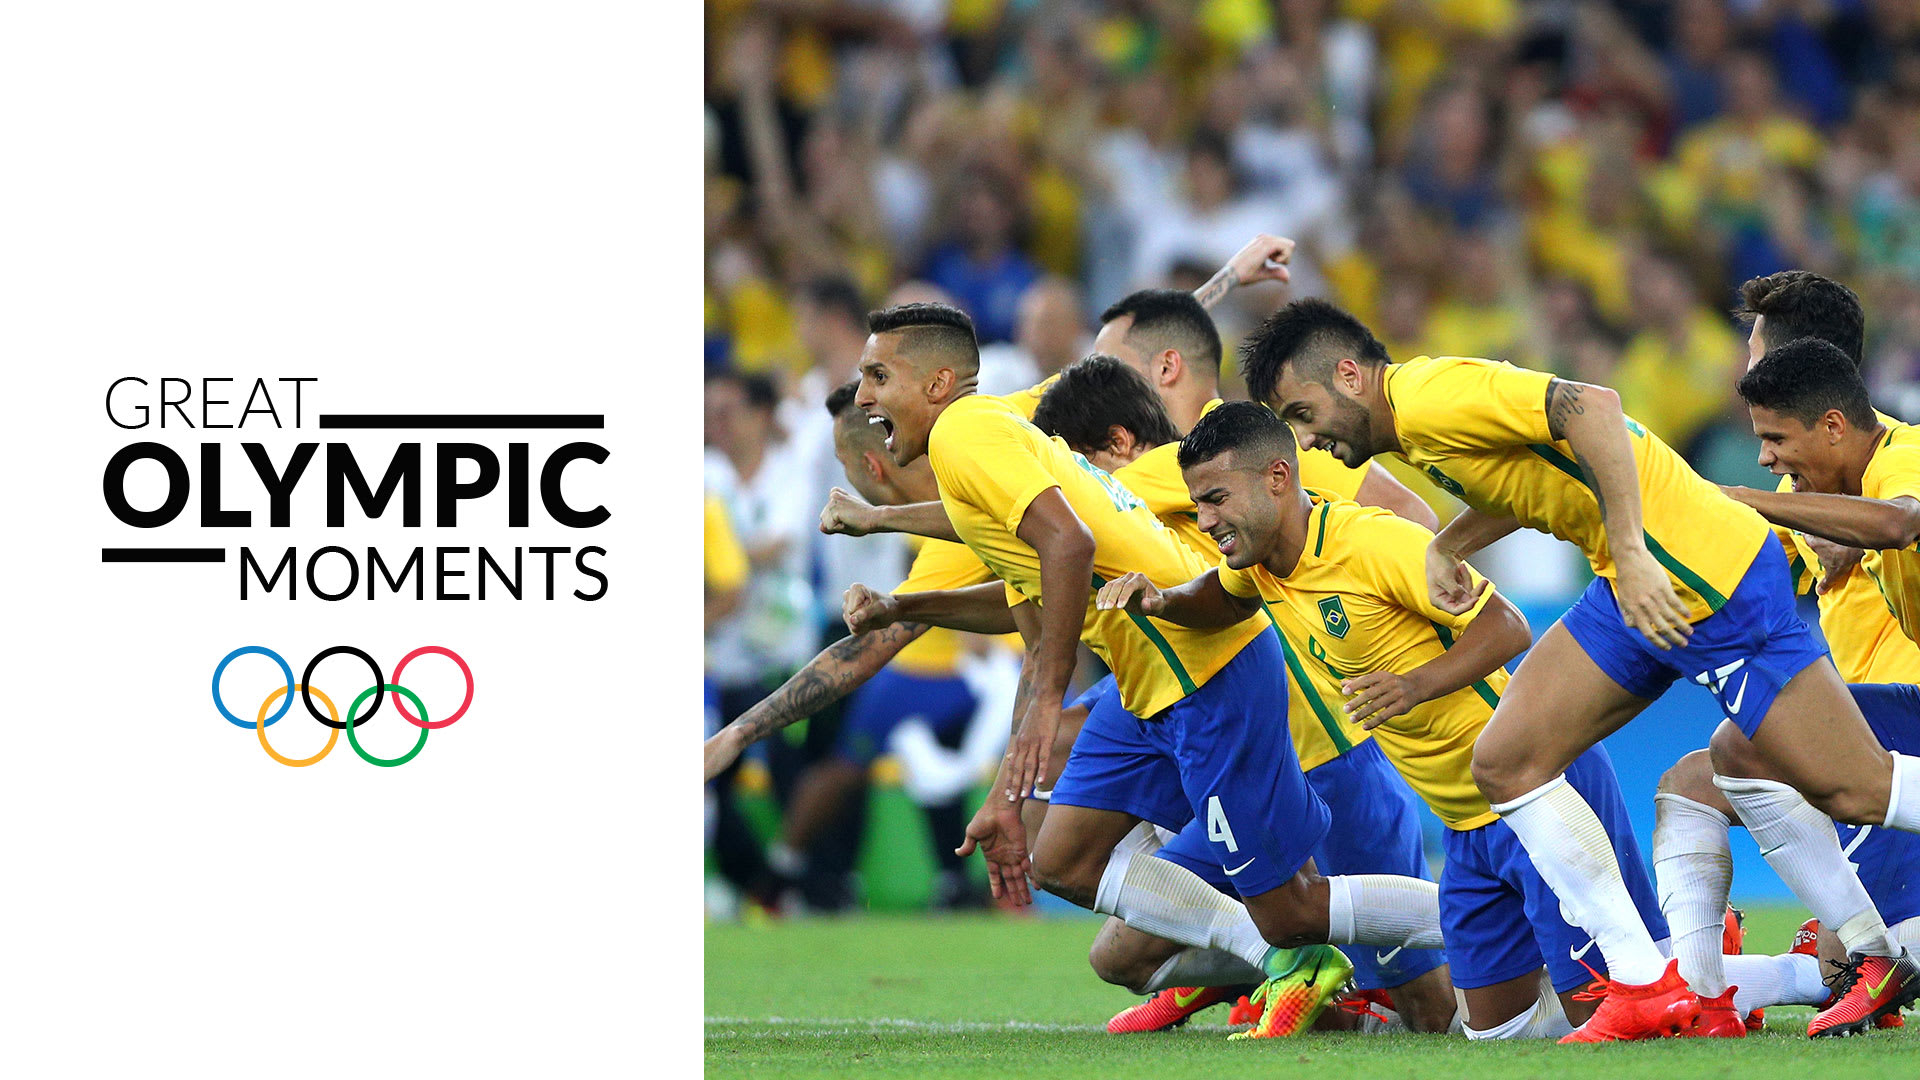 Jogos do Brasil ocorrerão durante a tarde na Copa do Catar, confirma Fifa -  WSCOM